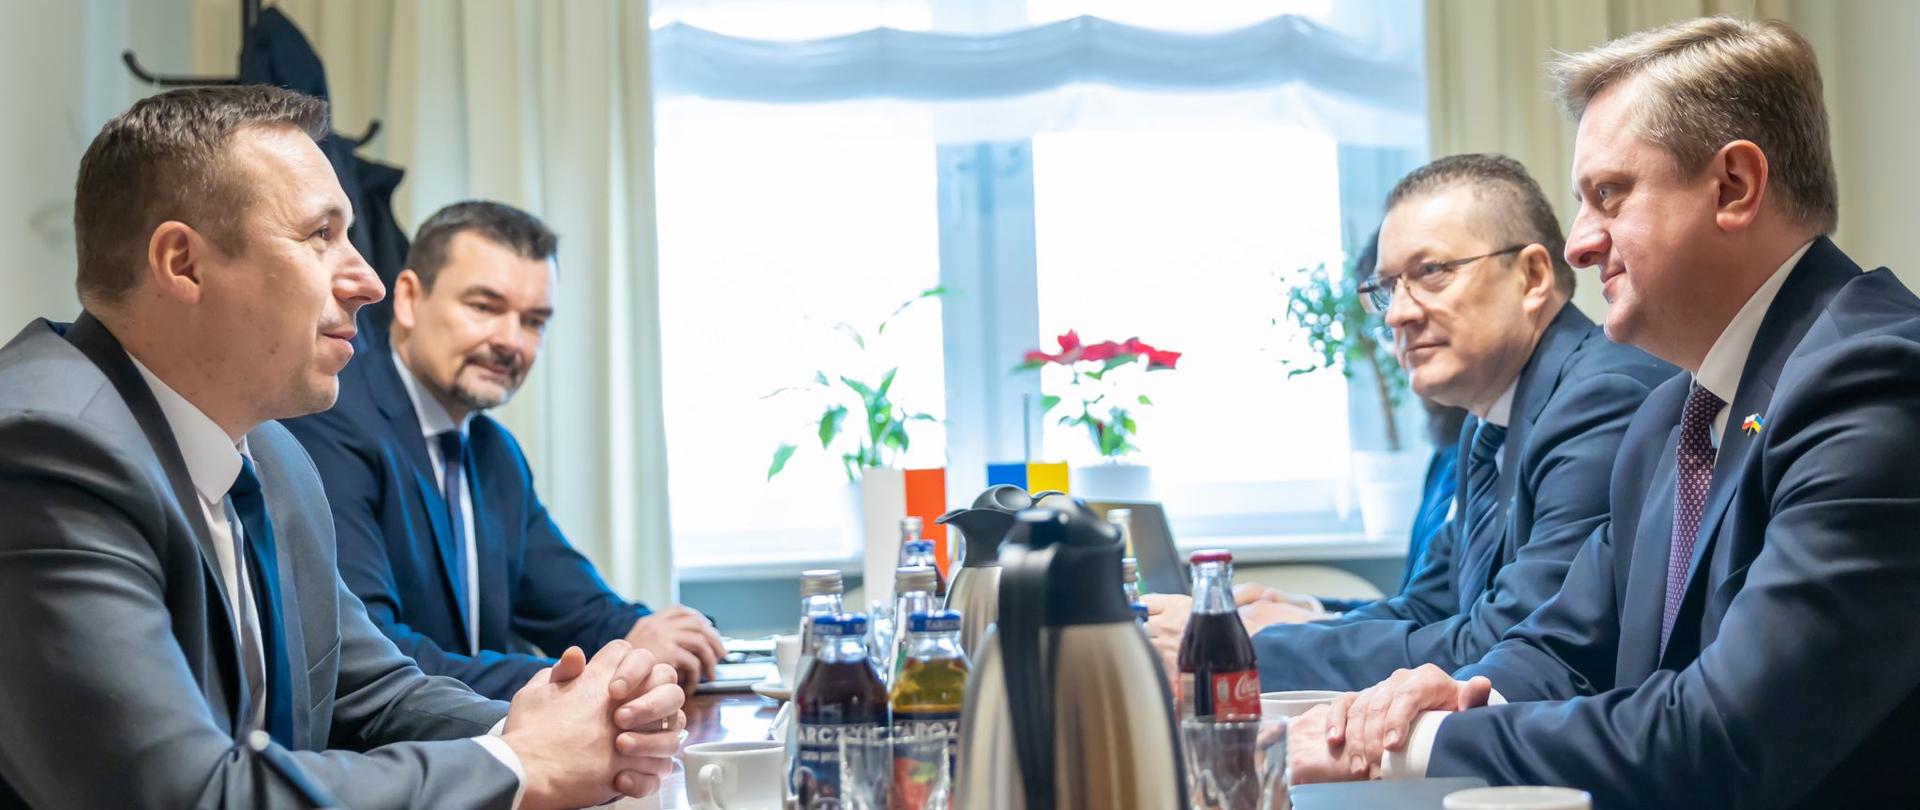 Wiceminister infrastruktury Paweł Gancarz w trakcie rozmowy z ambasadorem Ukrainy w Polsce Vasylem Zvarychem